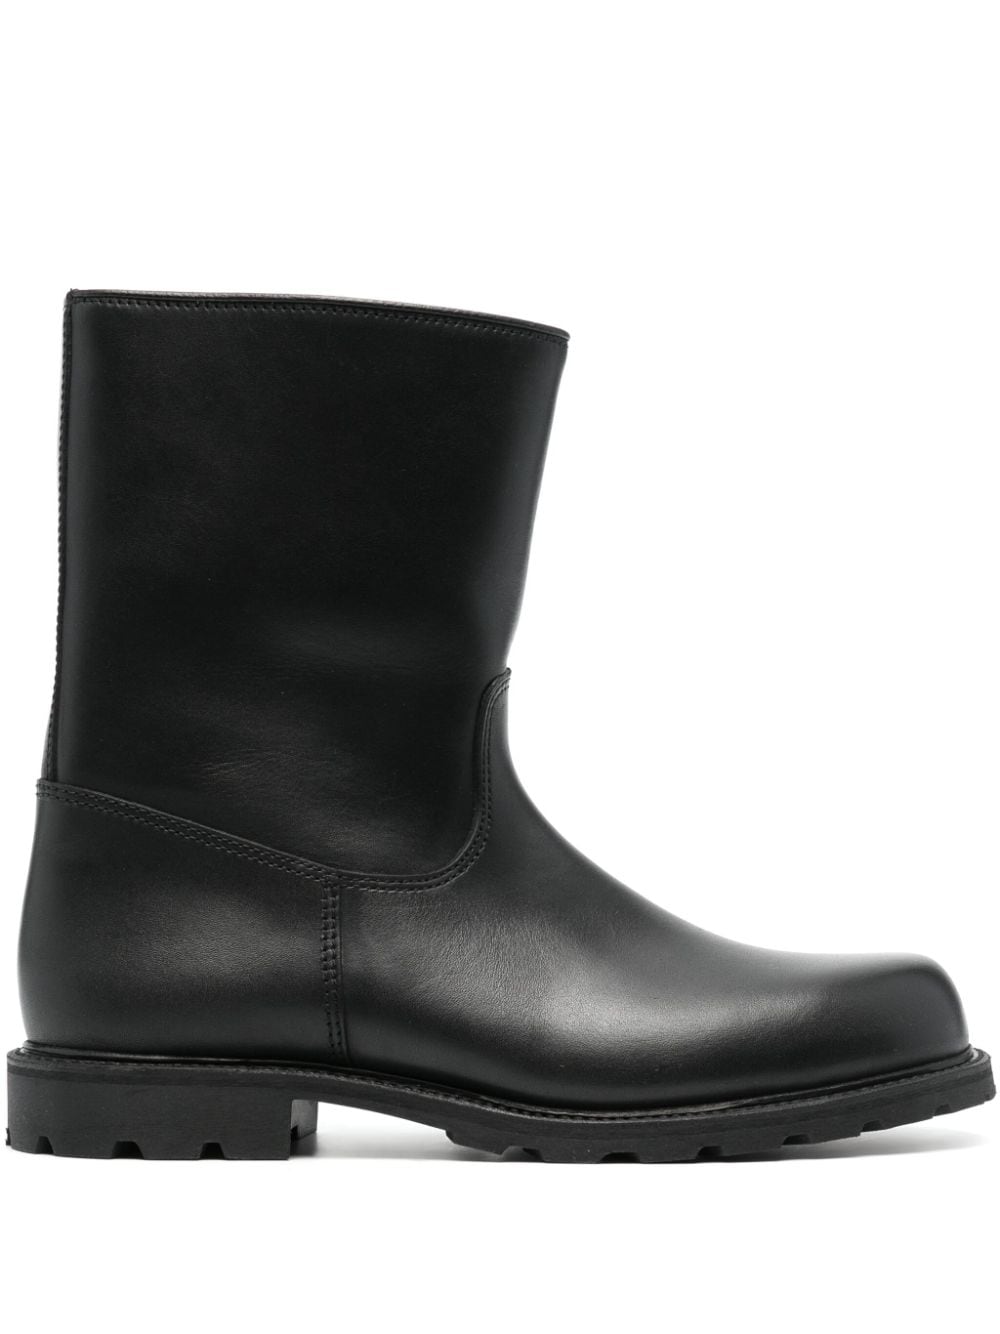 Rier City leather boots - Black von Rier